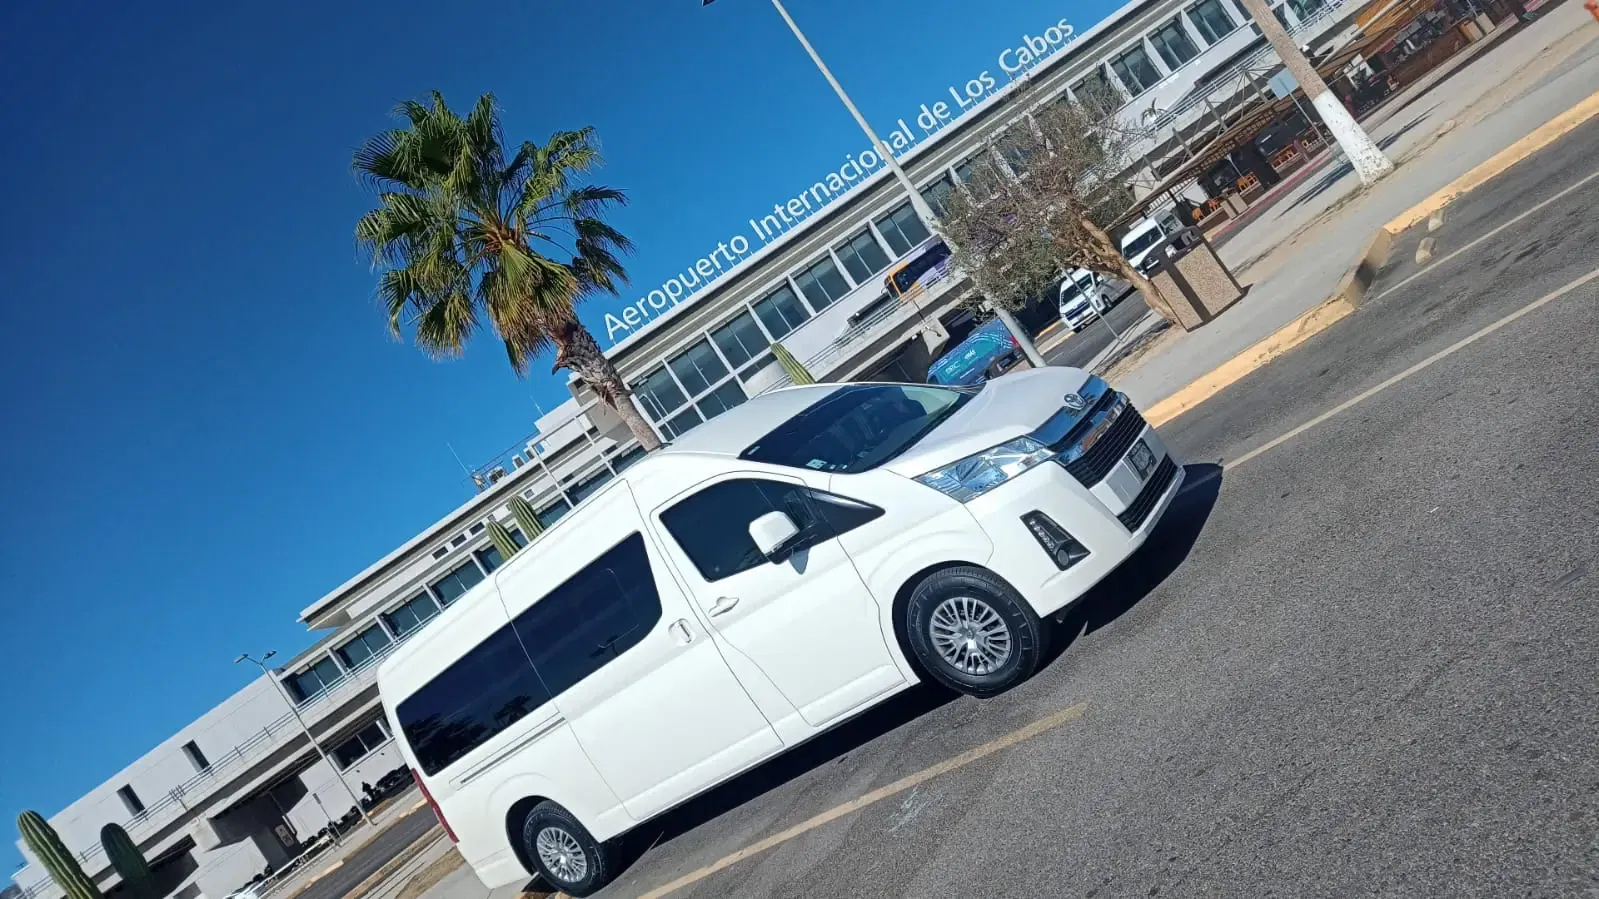 White Van Parked Outside Aeropuerto Internacional de los cabos Terminal 2